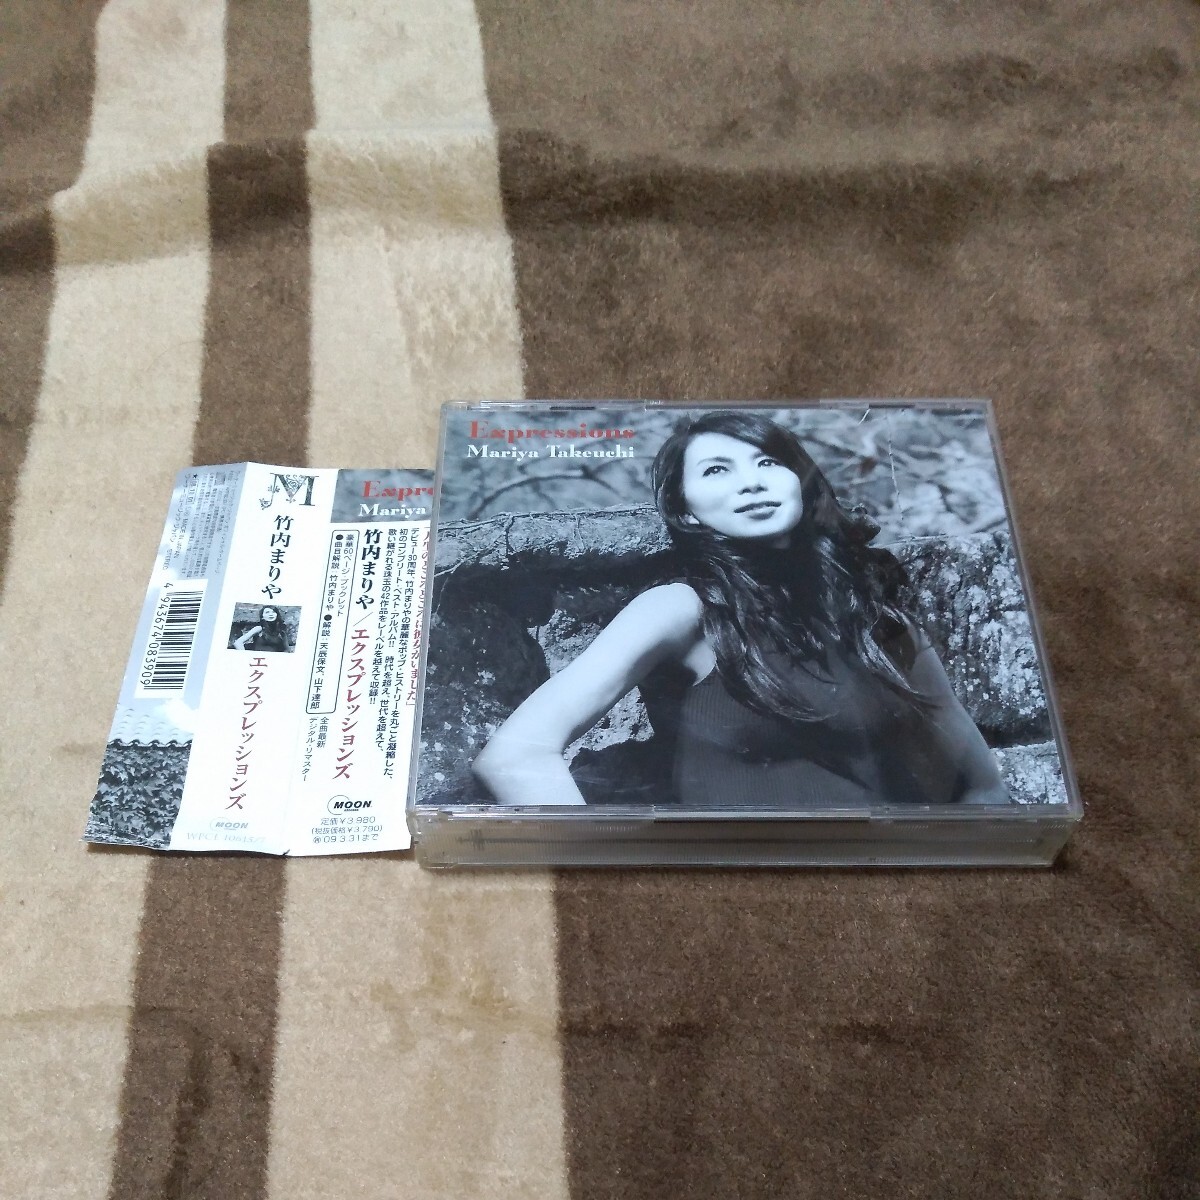 3枚組CD:竹内まりや / Expressions(エクスプレッションズ) 通常盤 / ワーナーミュージック(WPCL-10615-7) ベストアルバム 帯付き_画像1